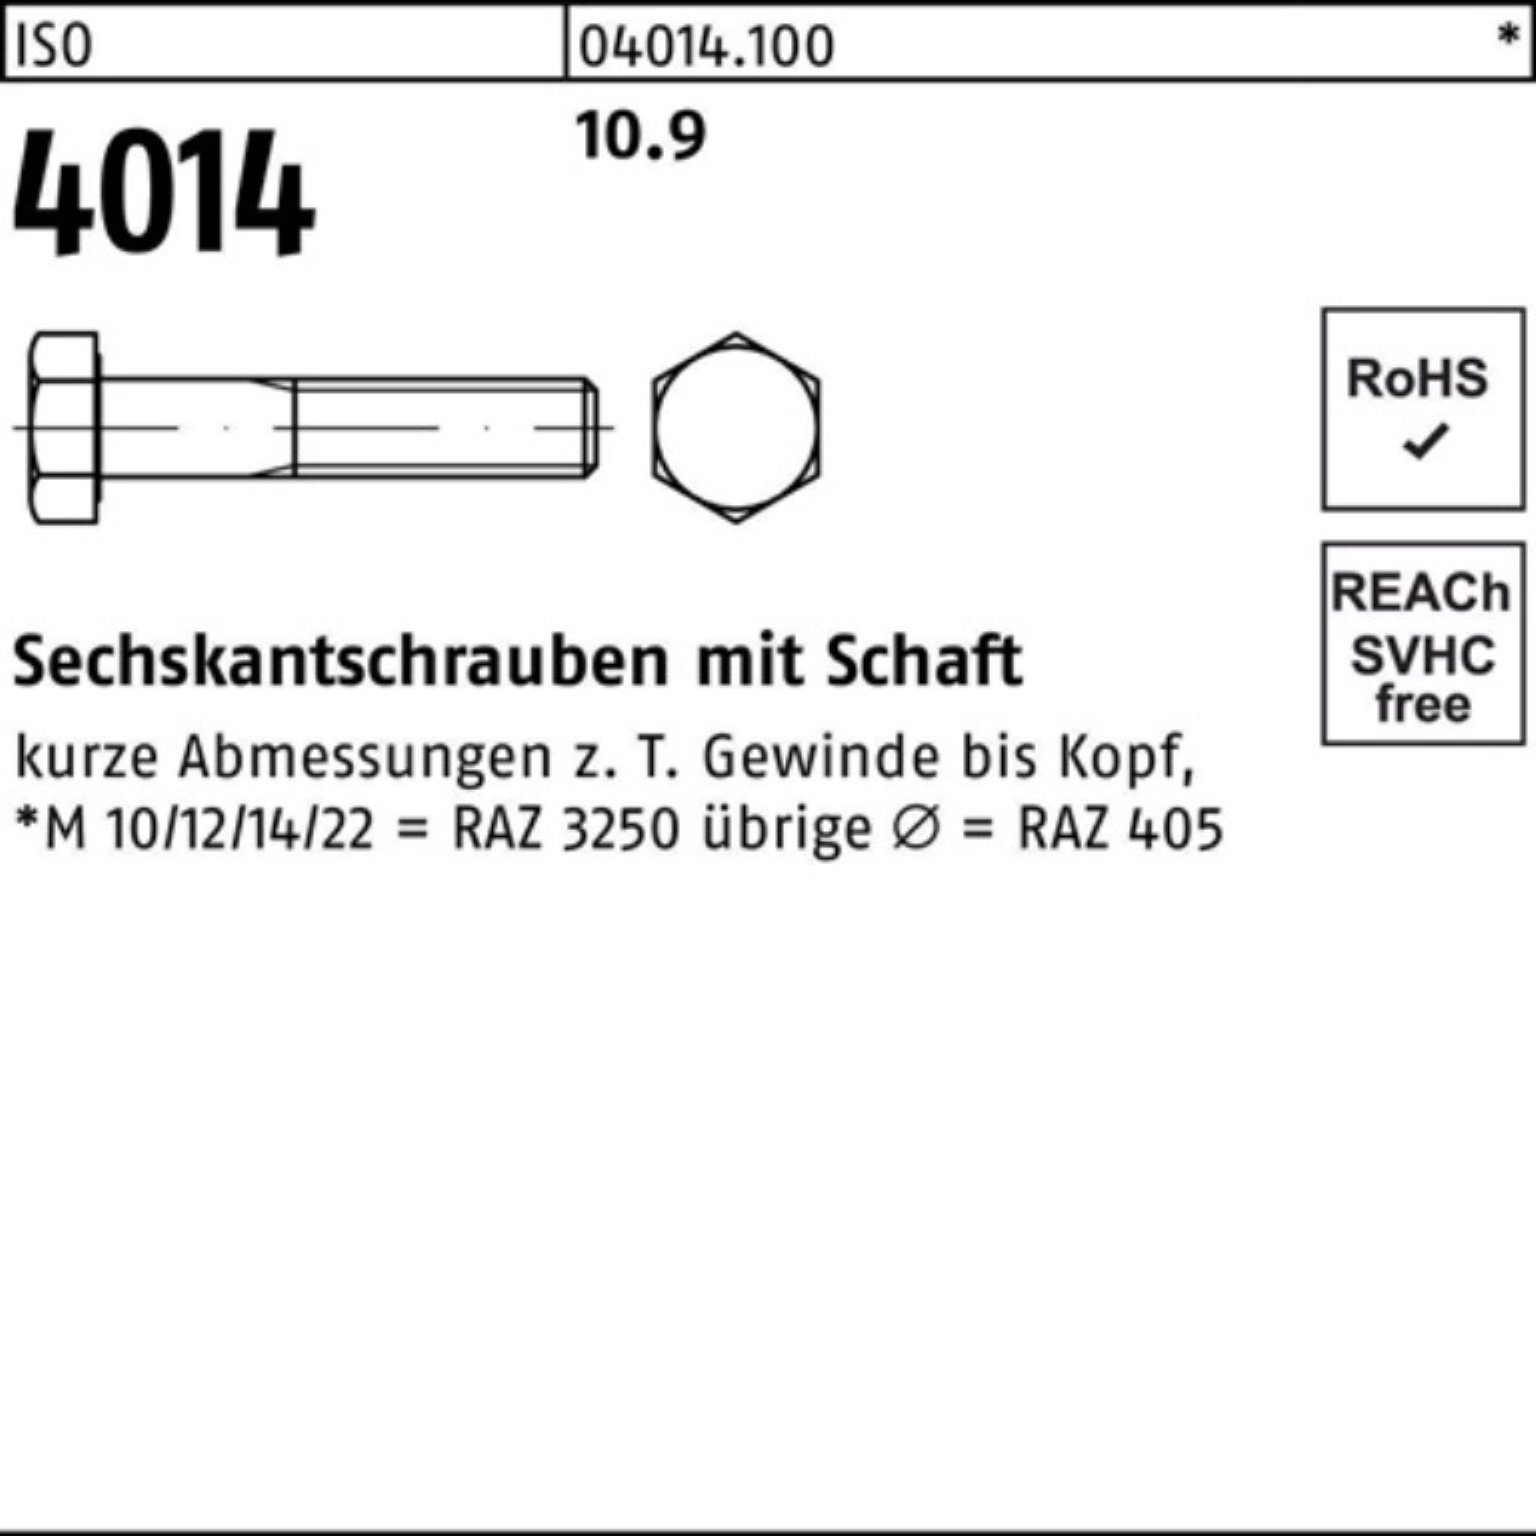 IS 220 Pack 1 Bufab Stück ISO 4014 Sechskantschraube Sechskantschraube Schaft 100er 10.9 M36x